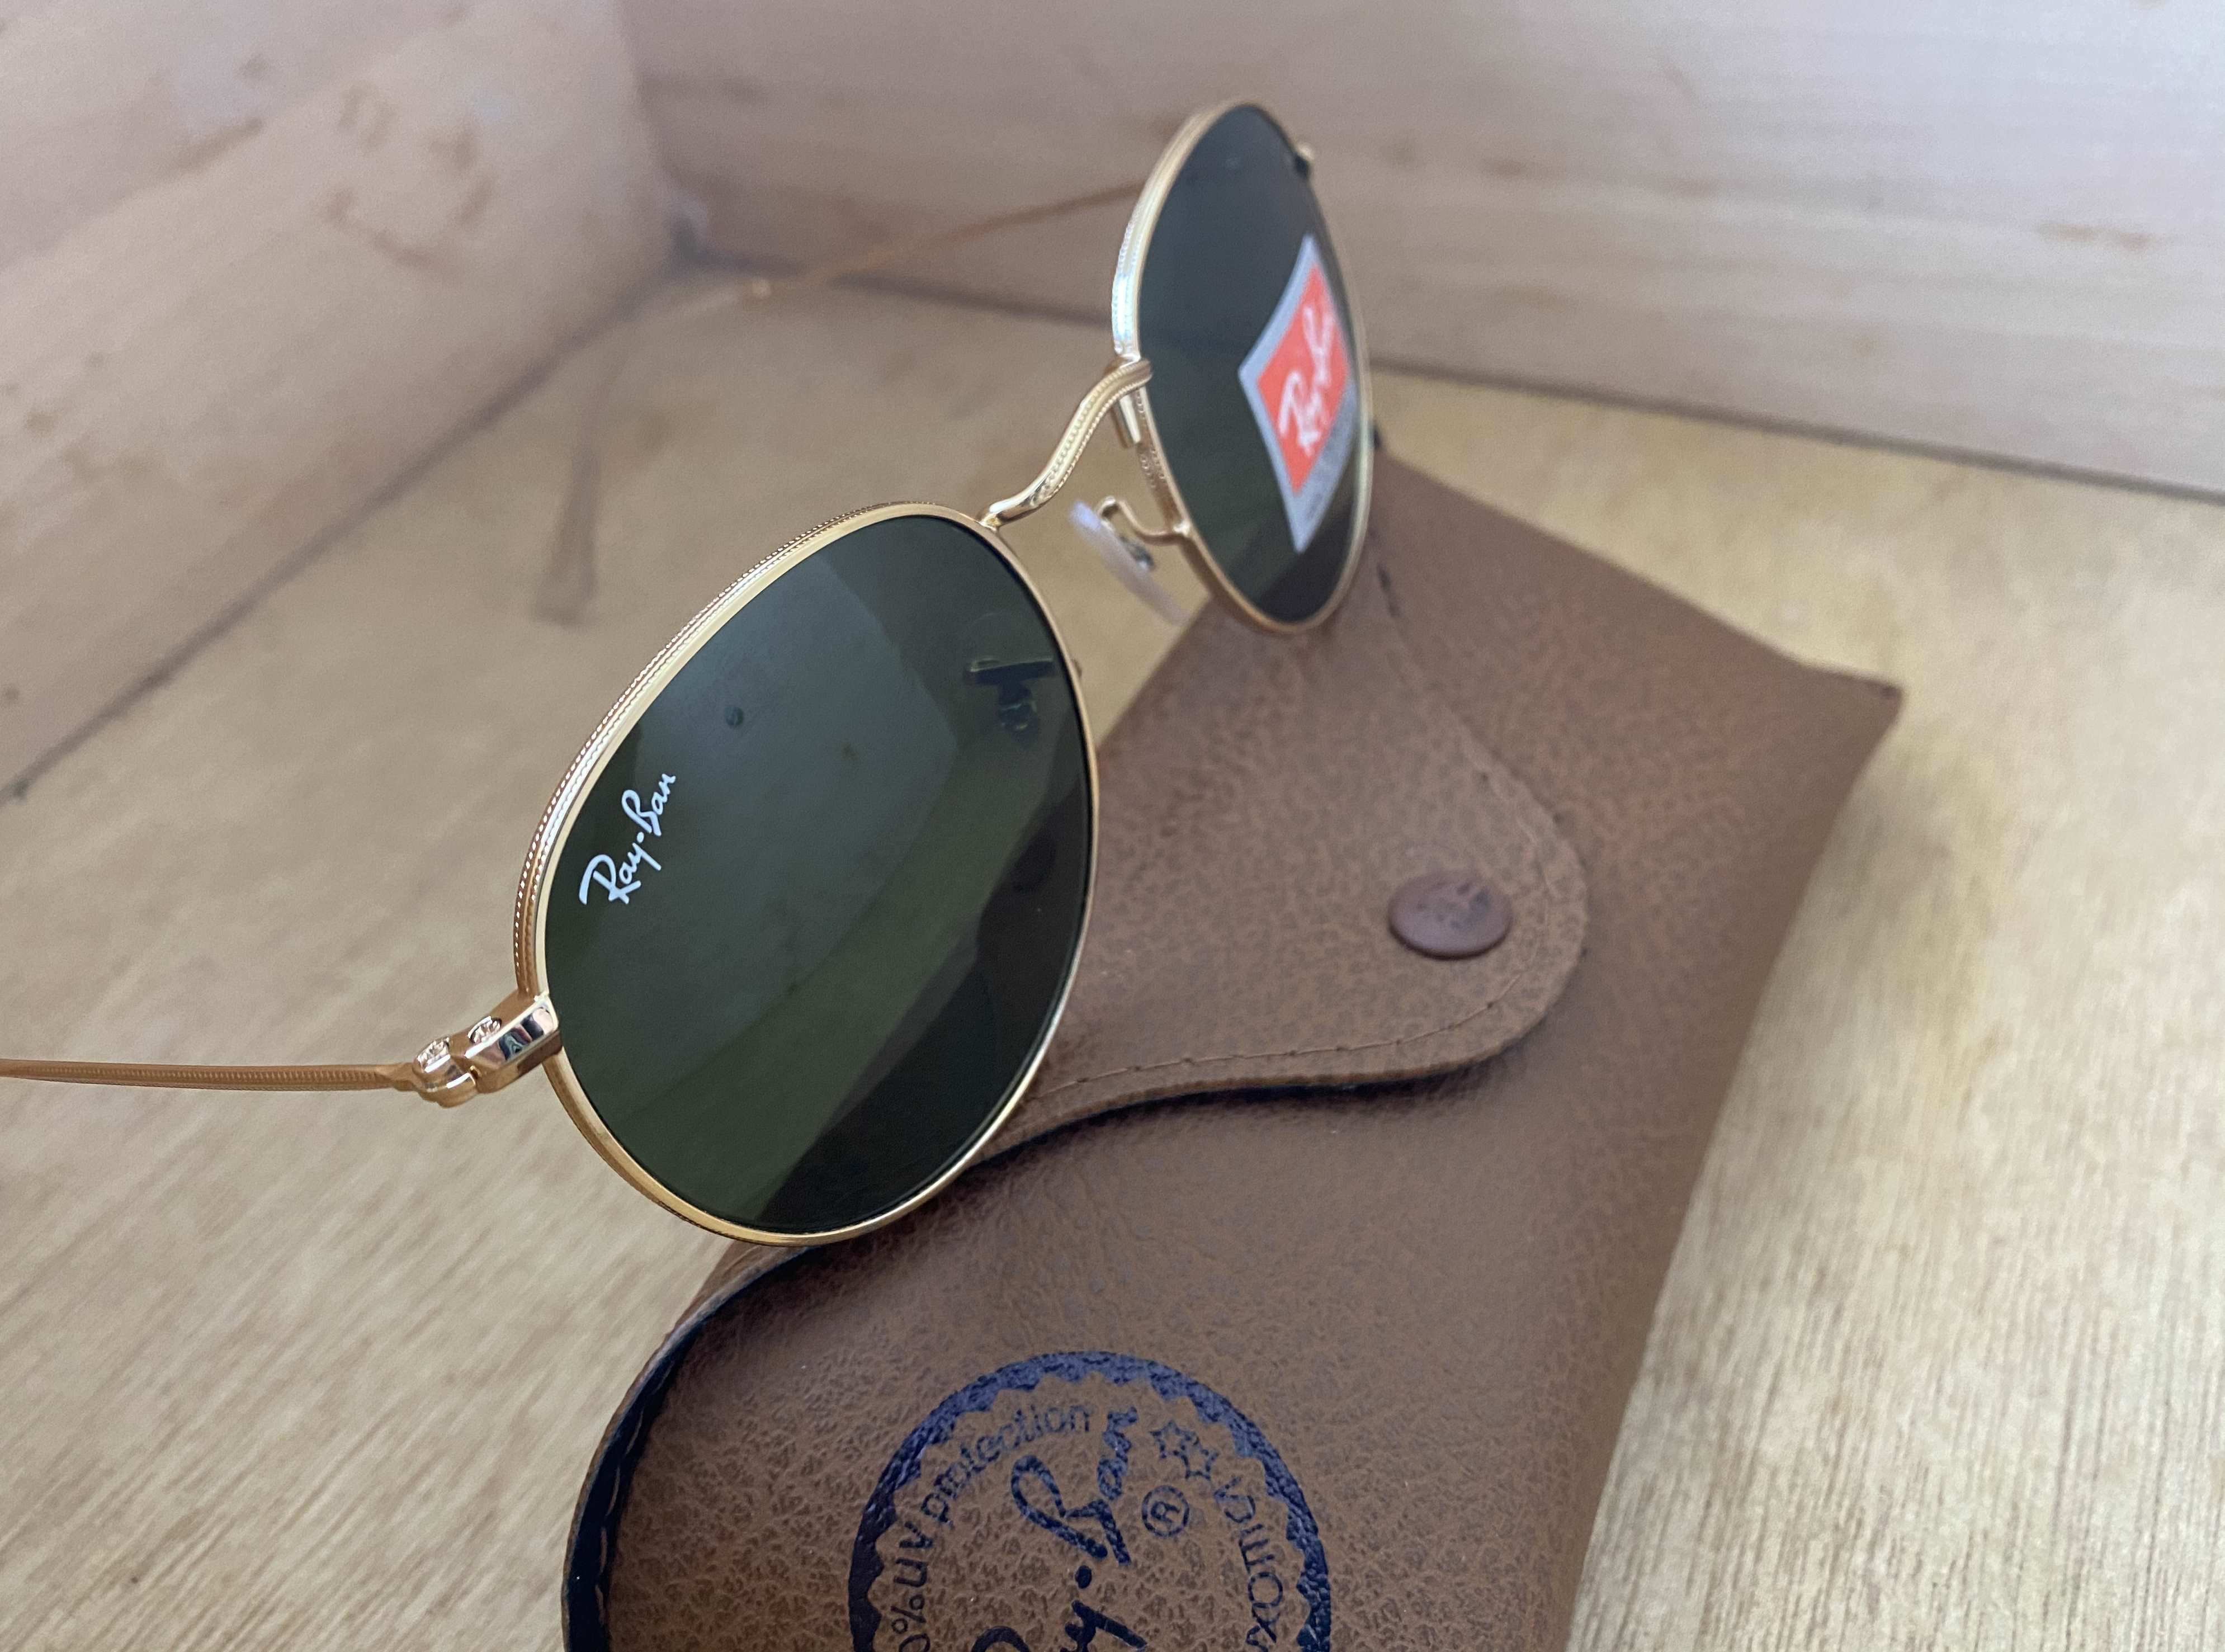 Brand New Authentic RayBan Round Sunglasses